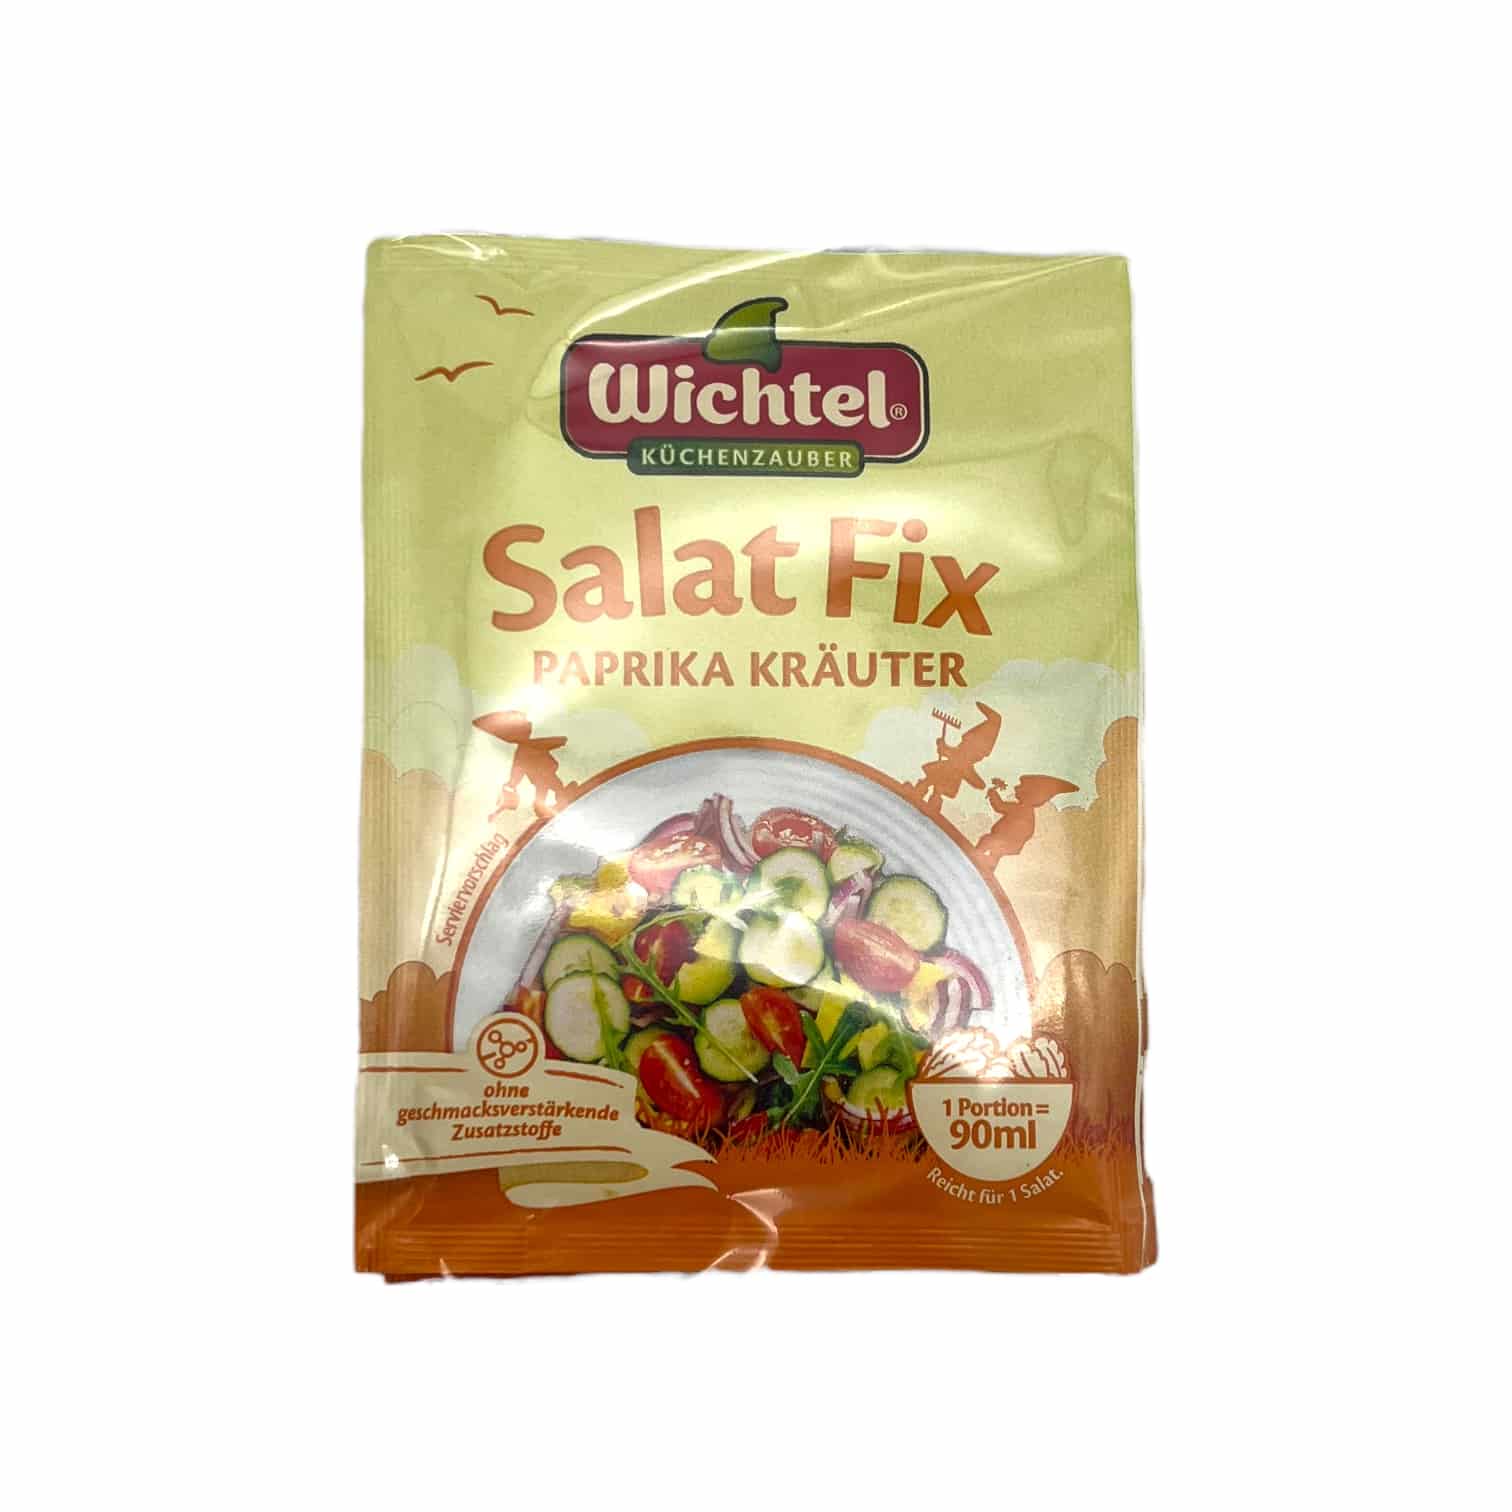 WICHTEL SalatFix Paprika Kräuter 5x10g